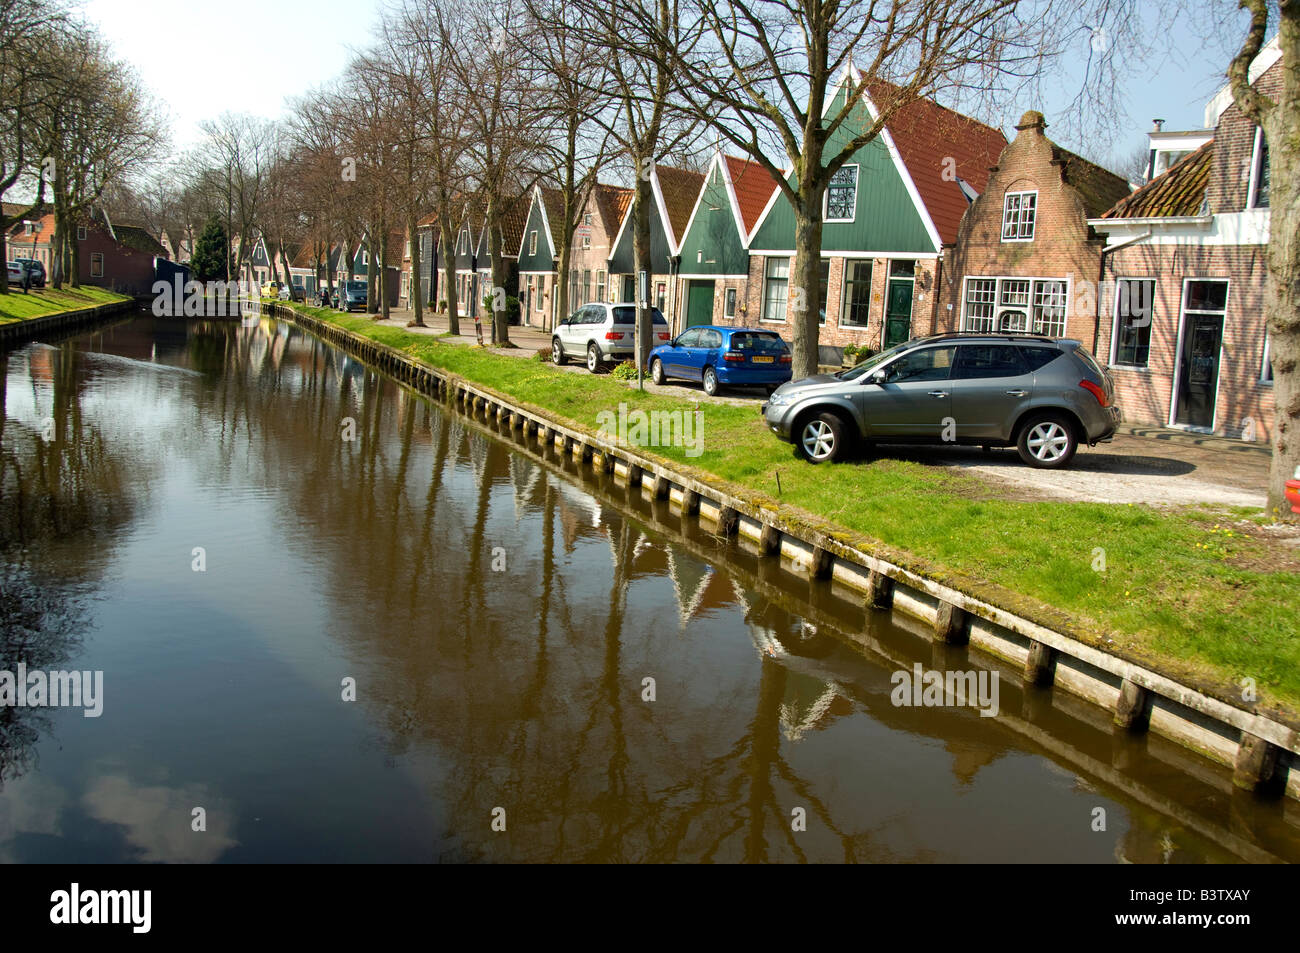 Europa, Paesi Bassi (aka Holland). Formaggio medievale producendo città di Edam. Case tipiche lungo Canal. Foto Stock